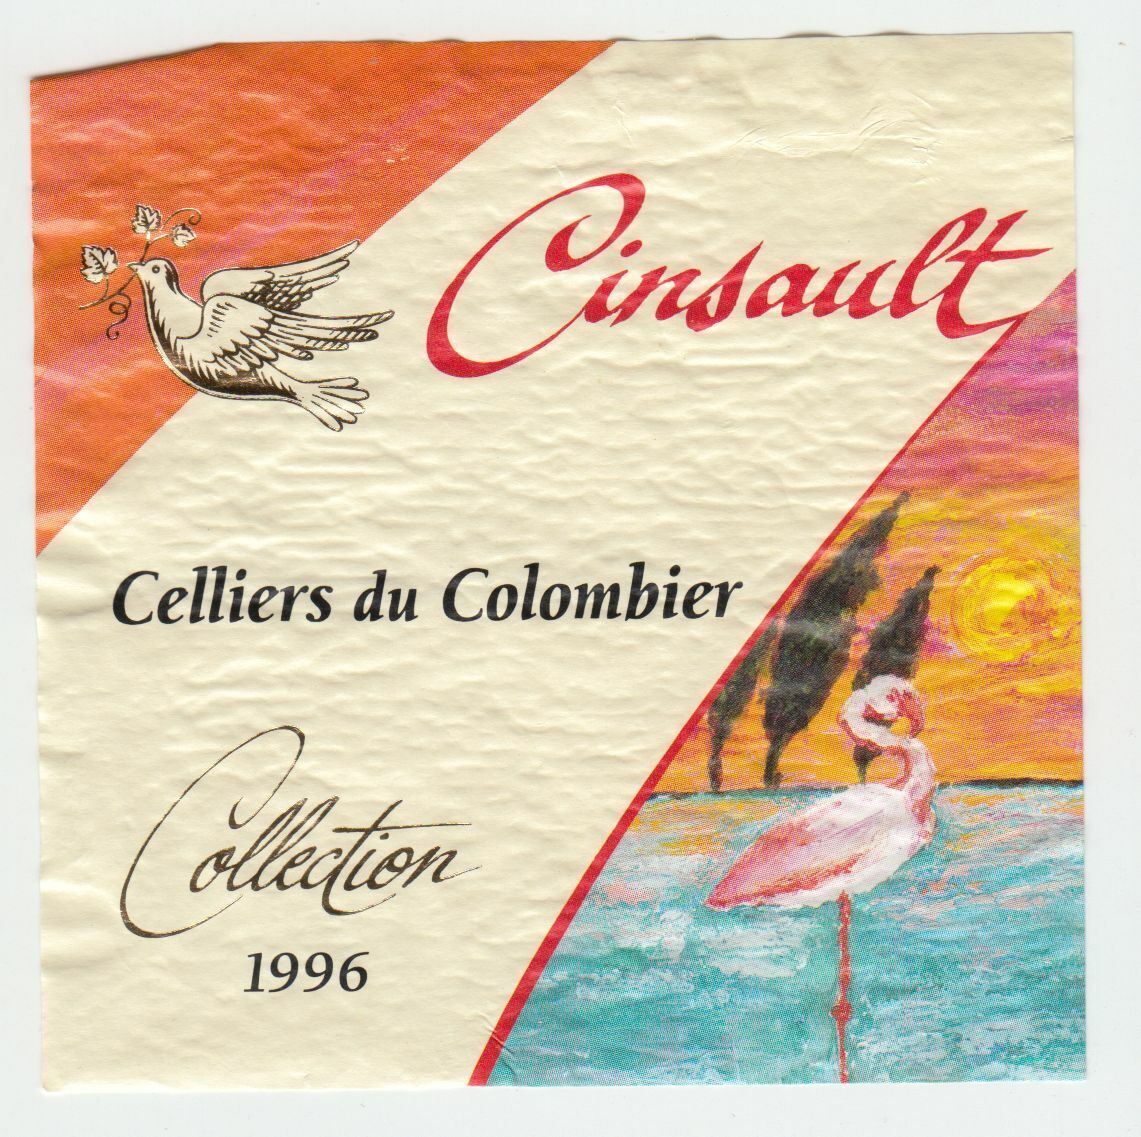 ETIQUETTE DE VIN CINSAULT CELLIER DU COLOMBIER 1996 FLAMANT ROSE 402553005741